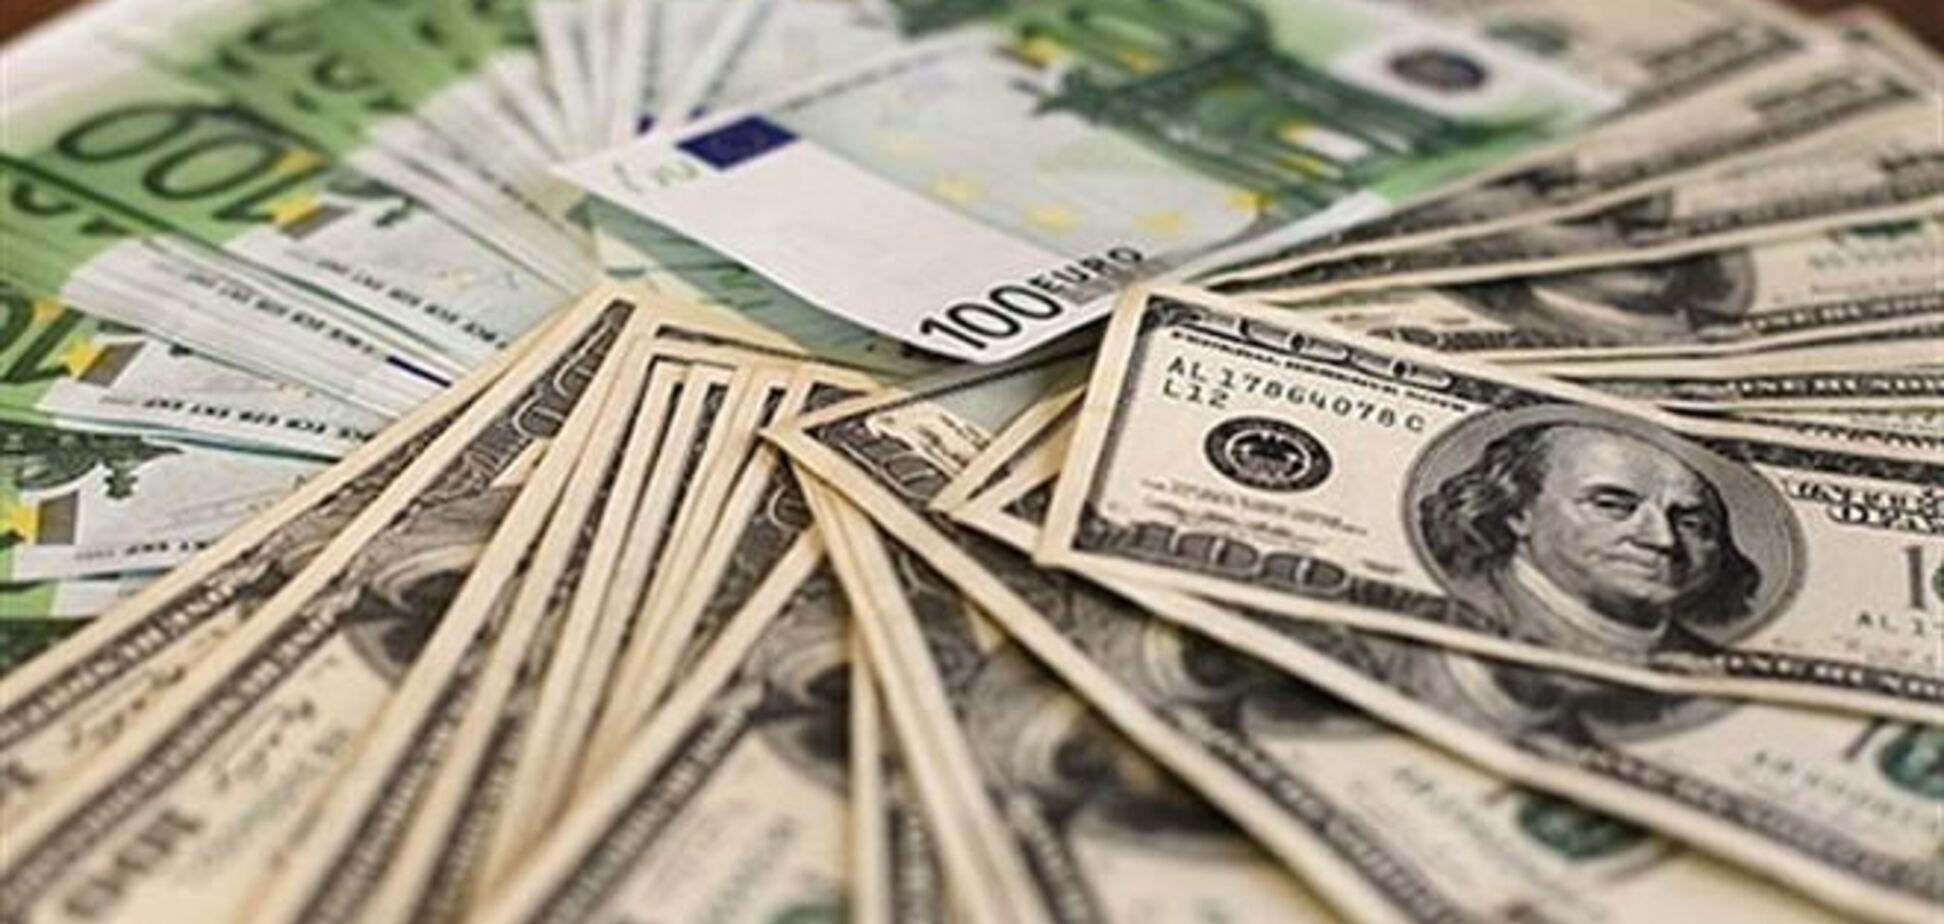 НБУ снова существенно повысил официальный курс валют